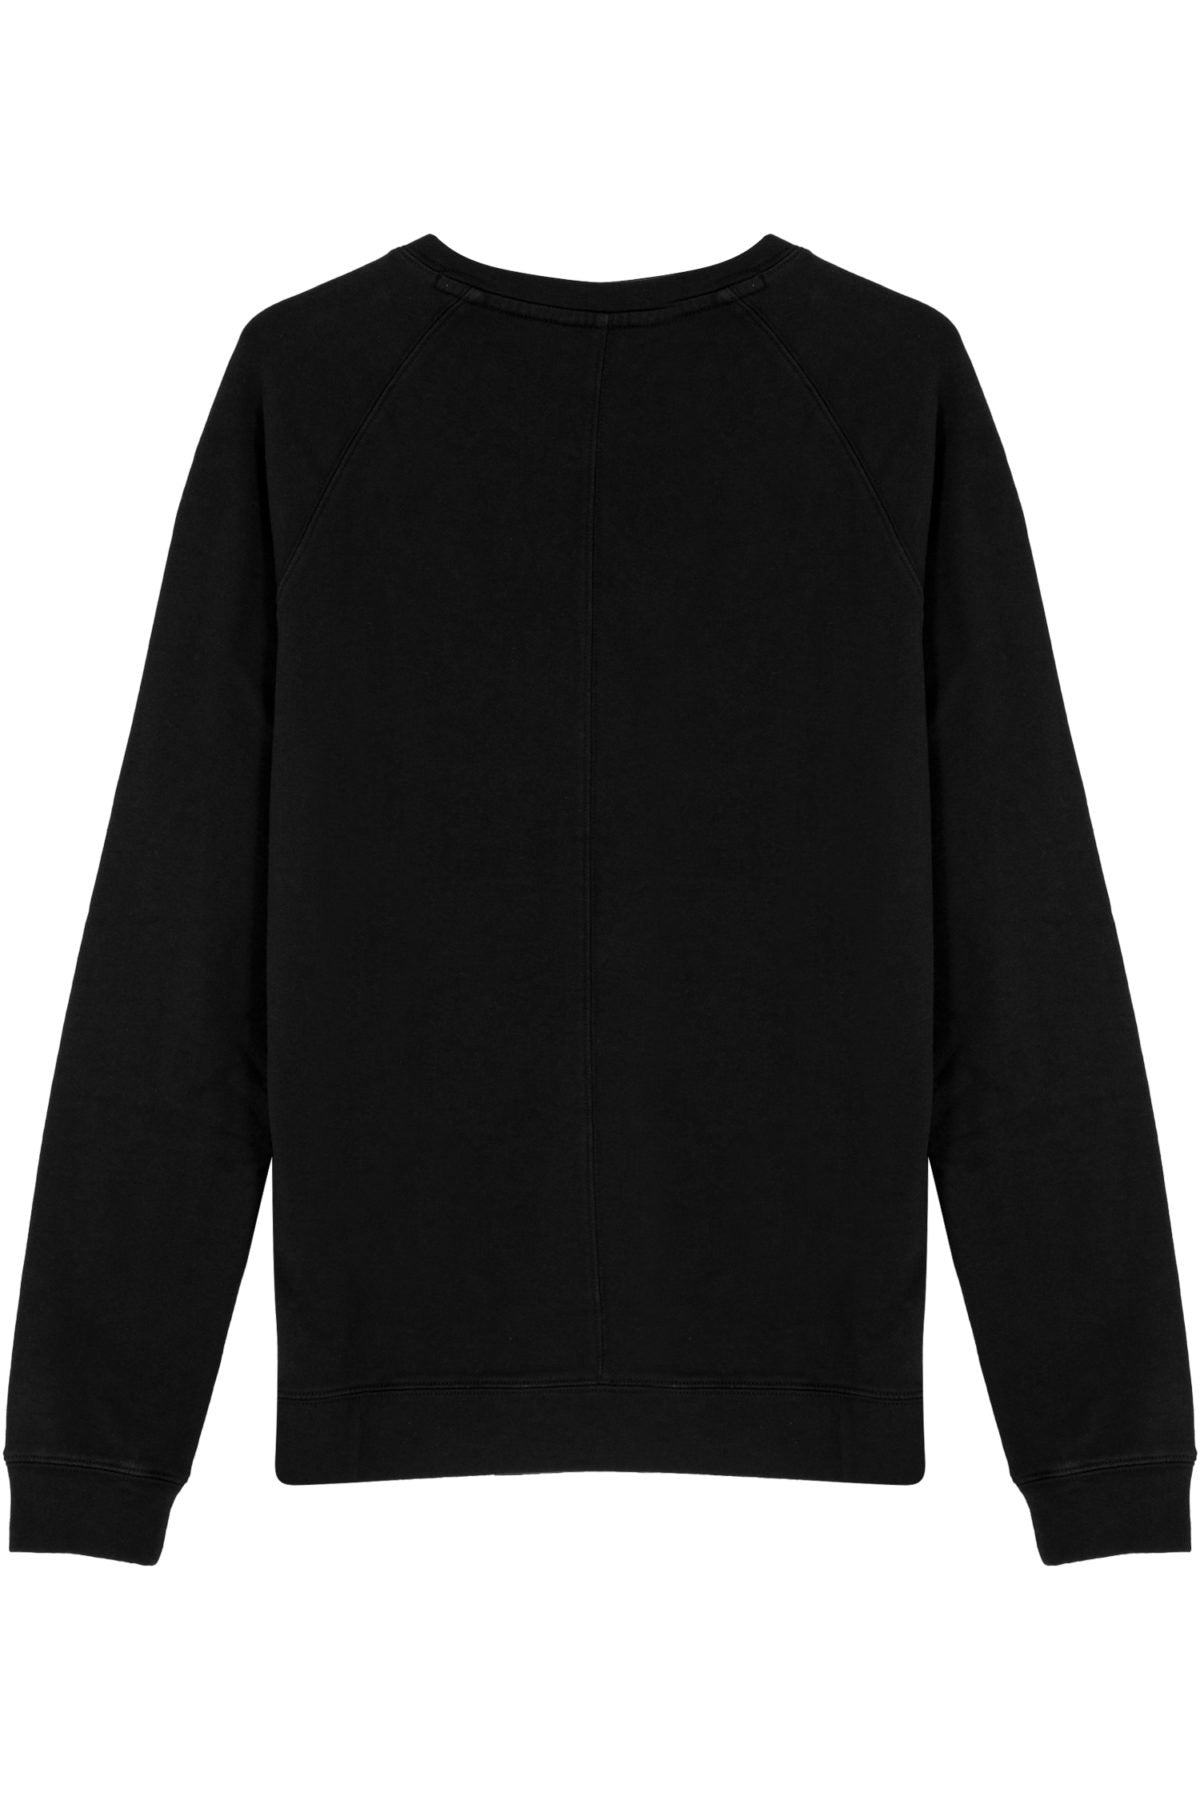 Load image into Gallery viewer, Cotton Crewneck Sweatshirt - Black
